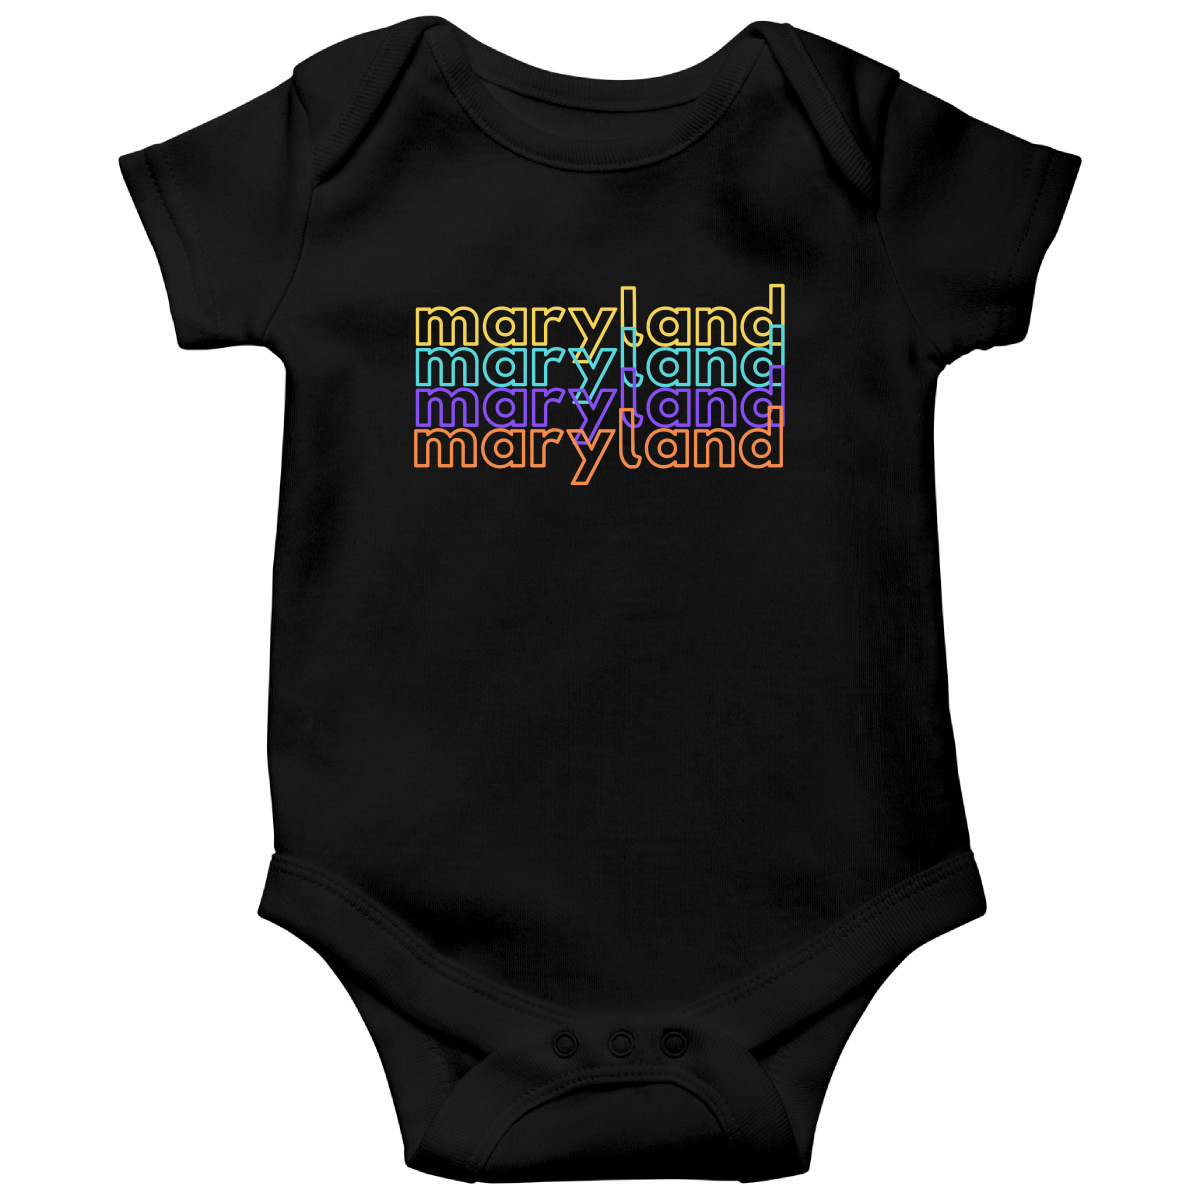 Maryland Baby Bodysuit | Black